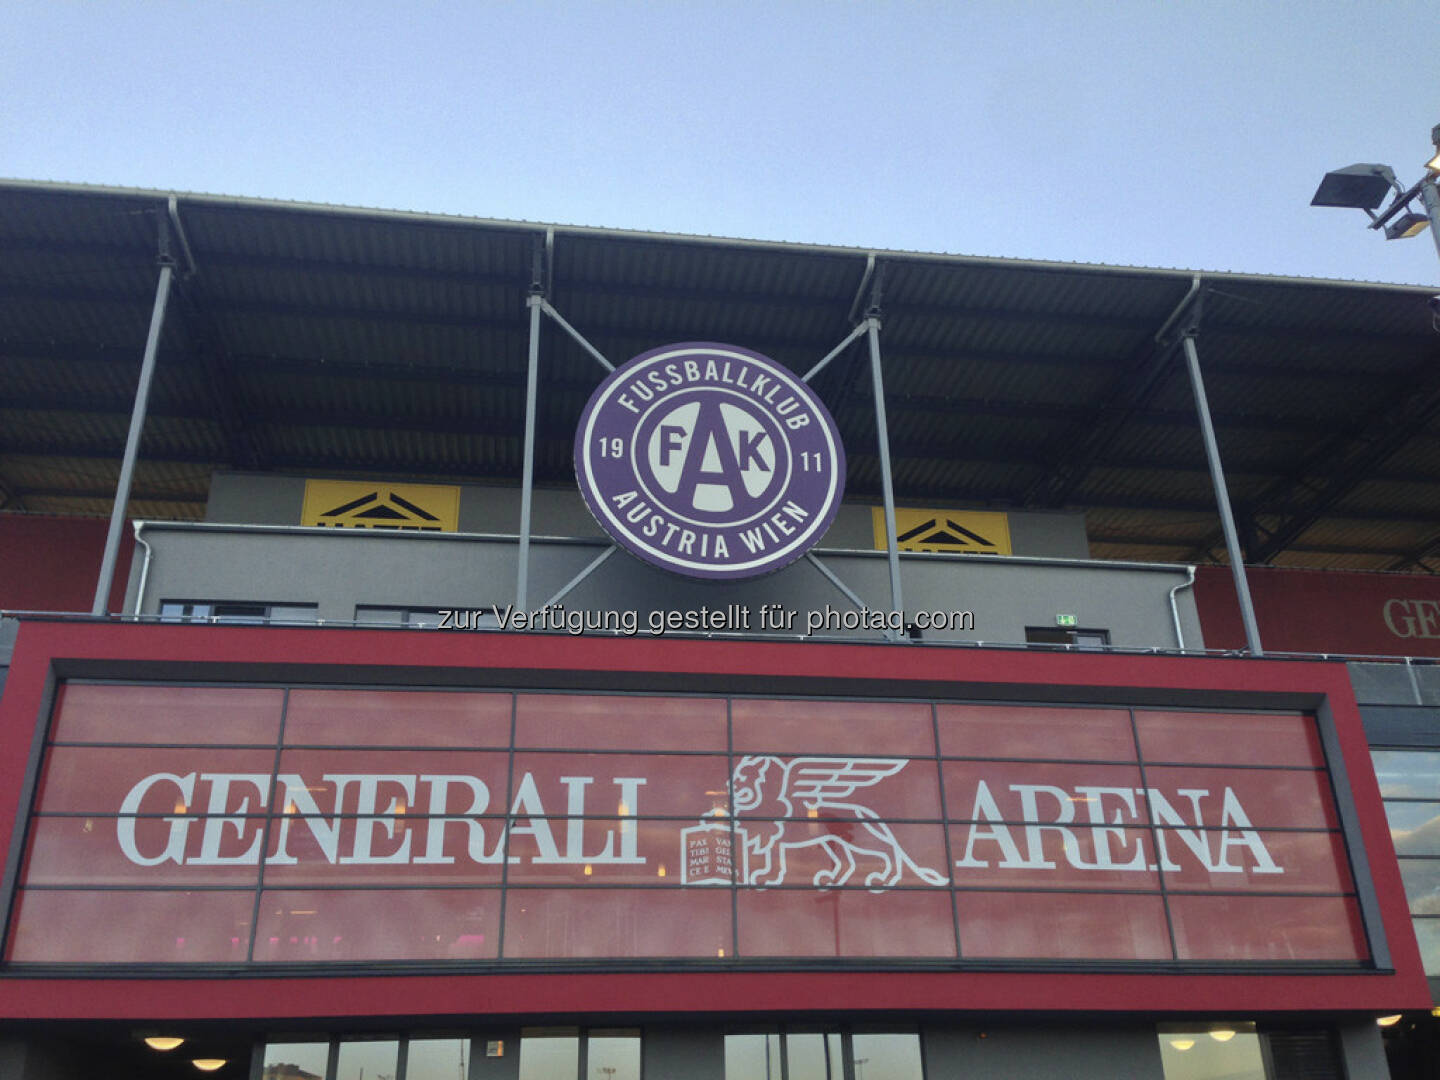 Generali Arena, FAK, Austria Wien